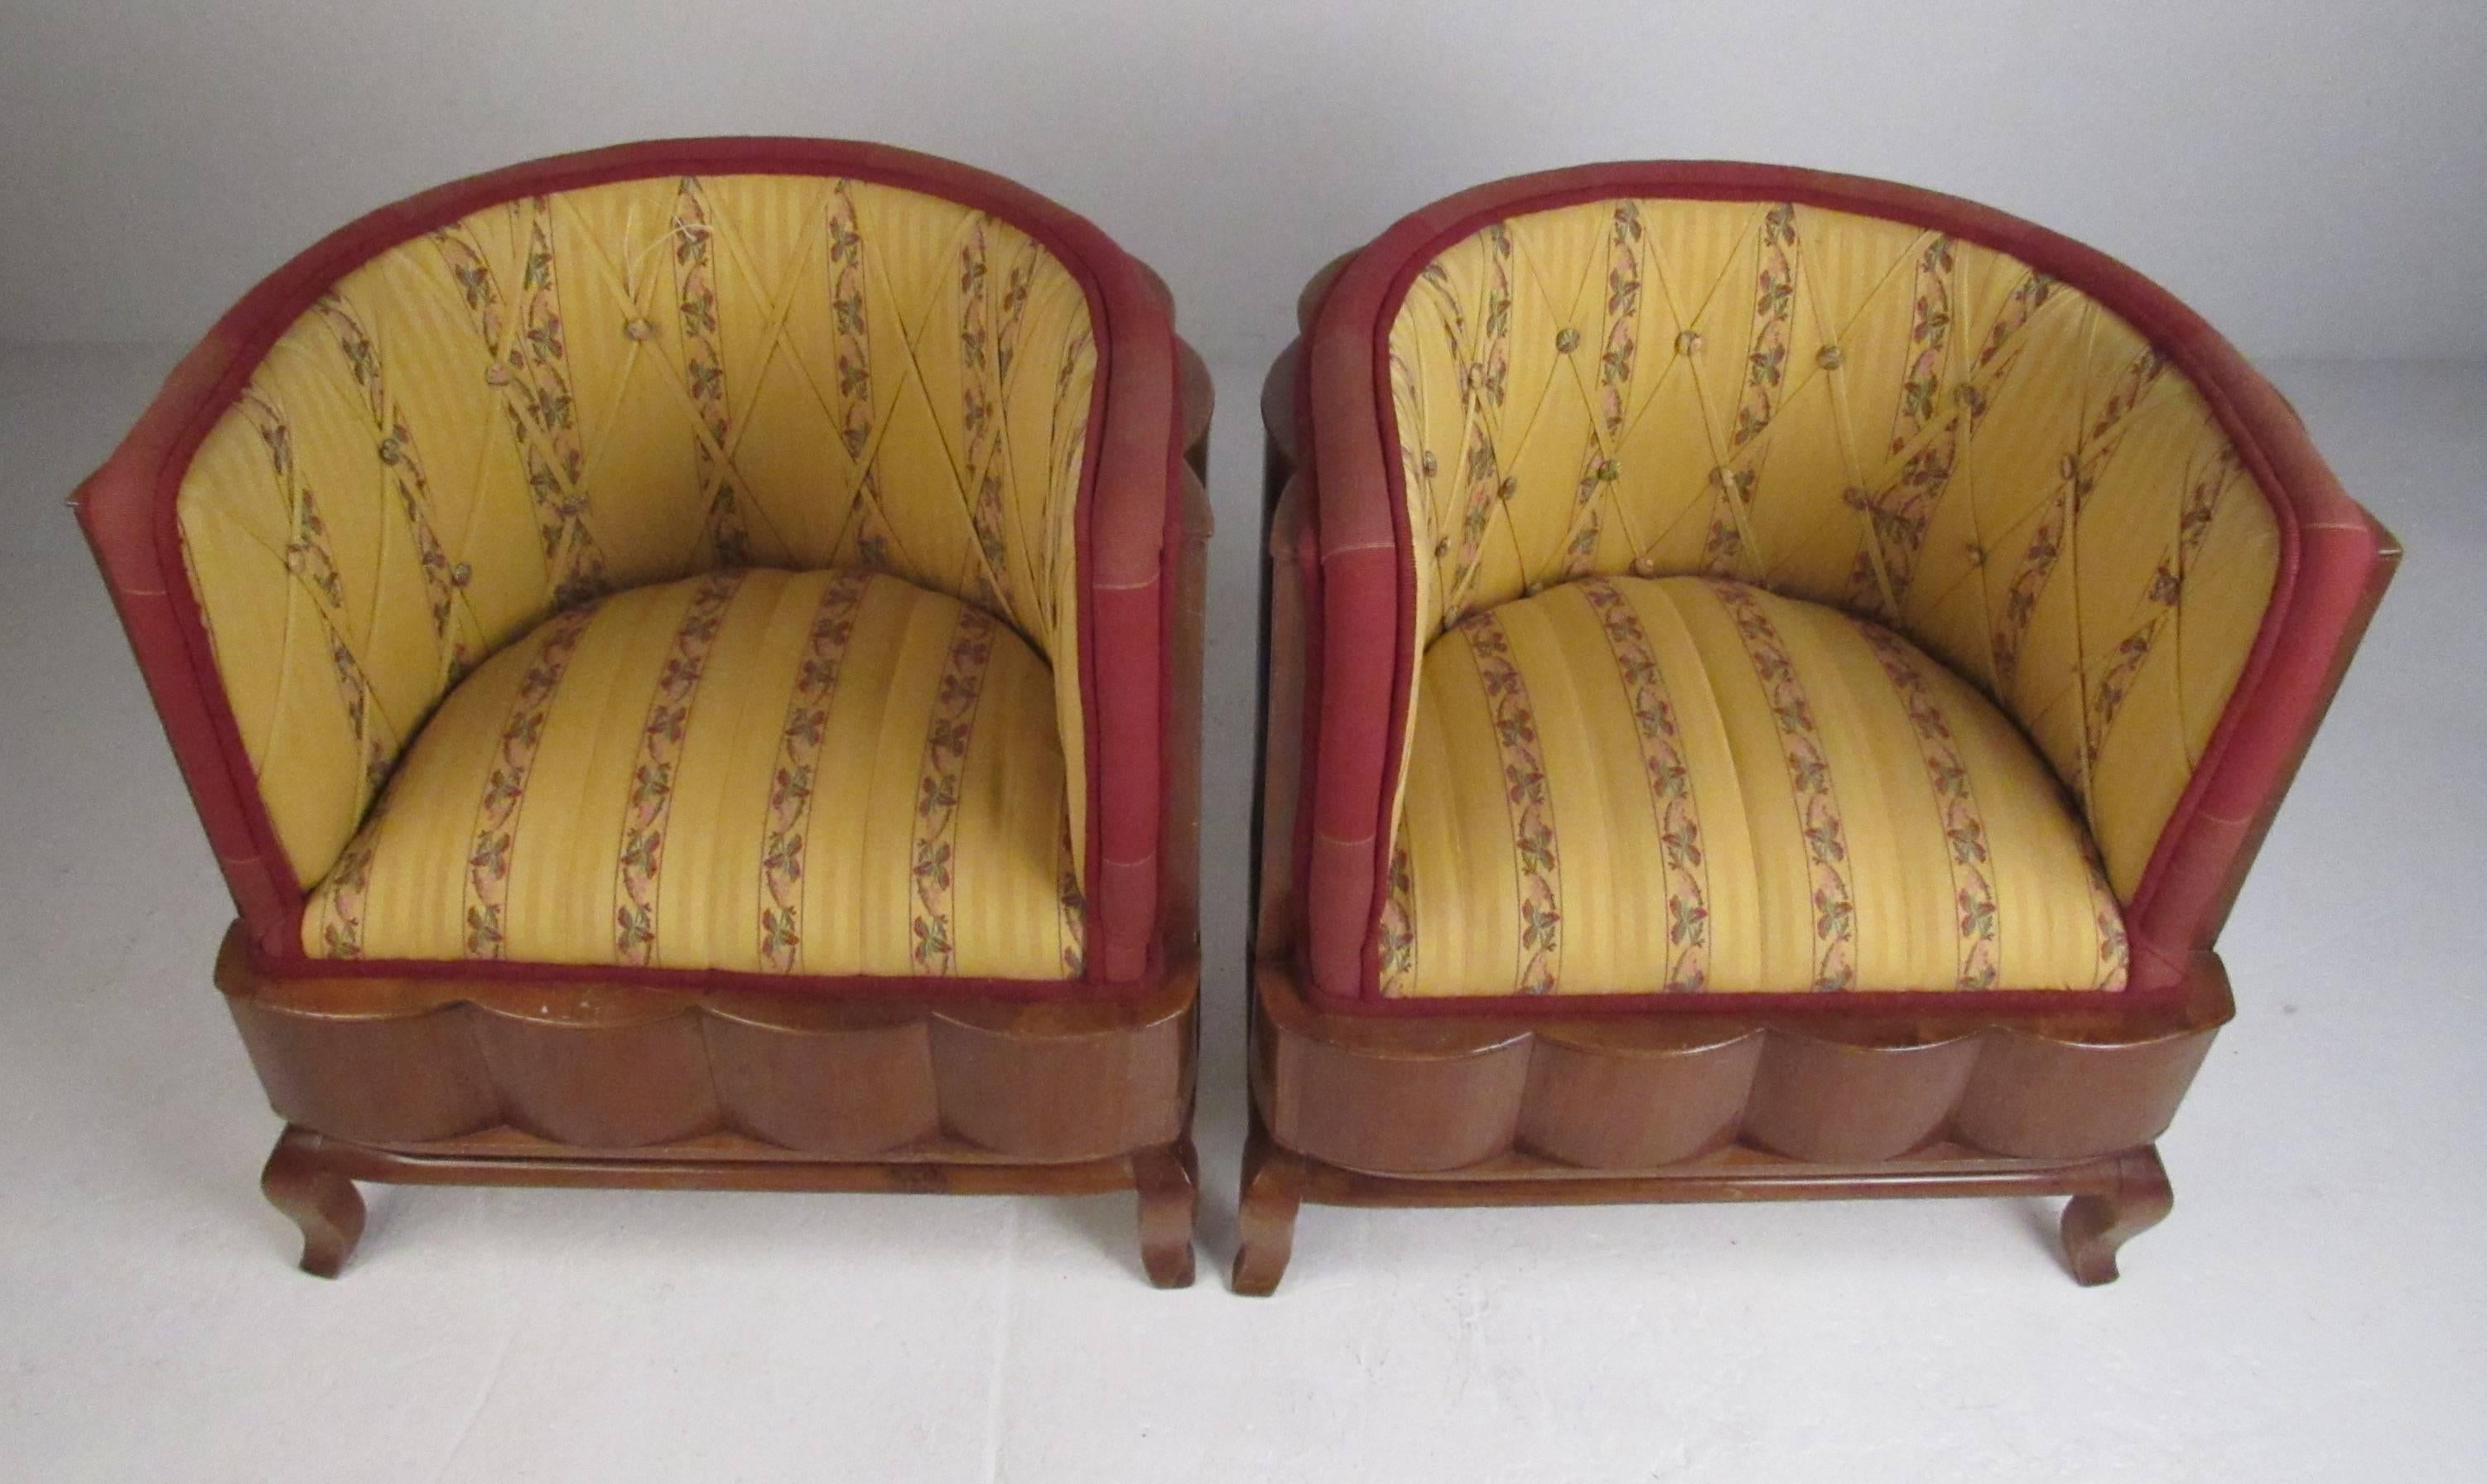 Diese Stühle im italienischen Art-Déco-Stil setzen mit ihren geriffelten Hartholzlehnen und der farbenfrohen Polsterung einen dramatischen Akzent. Passendes Sofa verfügbar. Bitte bestätigen Sie den Standort des Artikels (NY oder NJ) mit dem